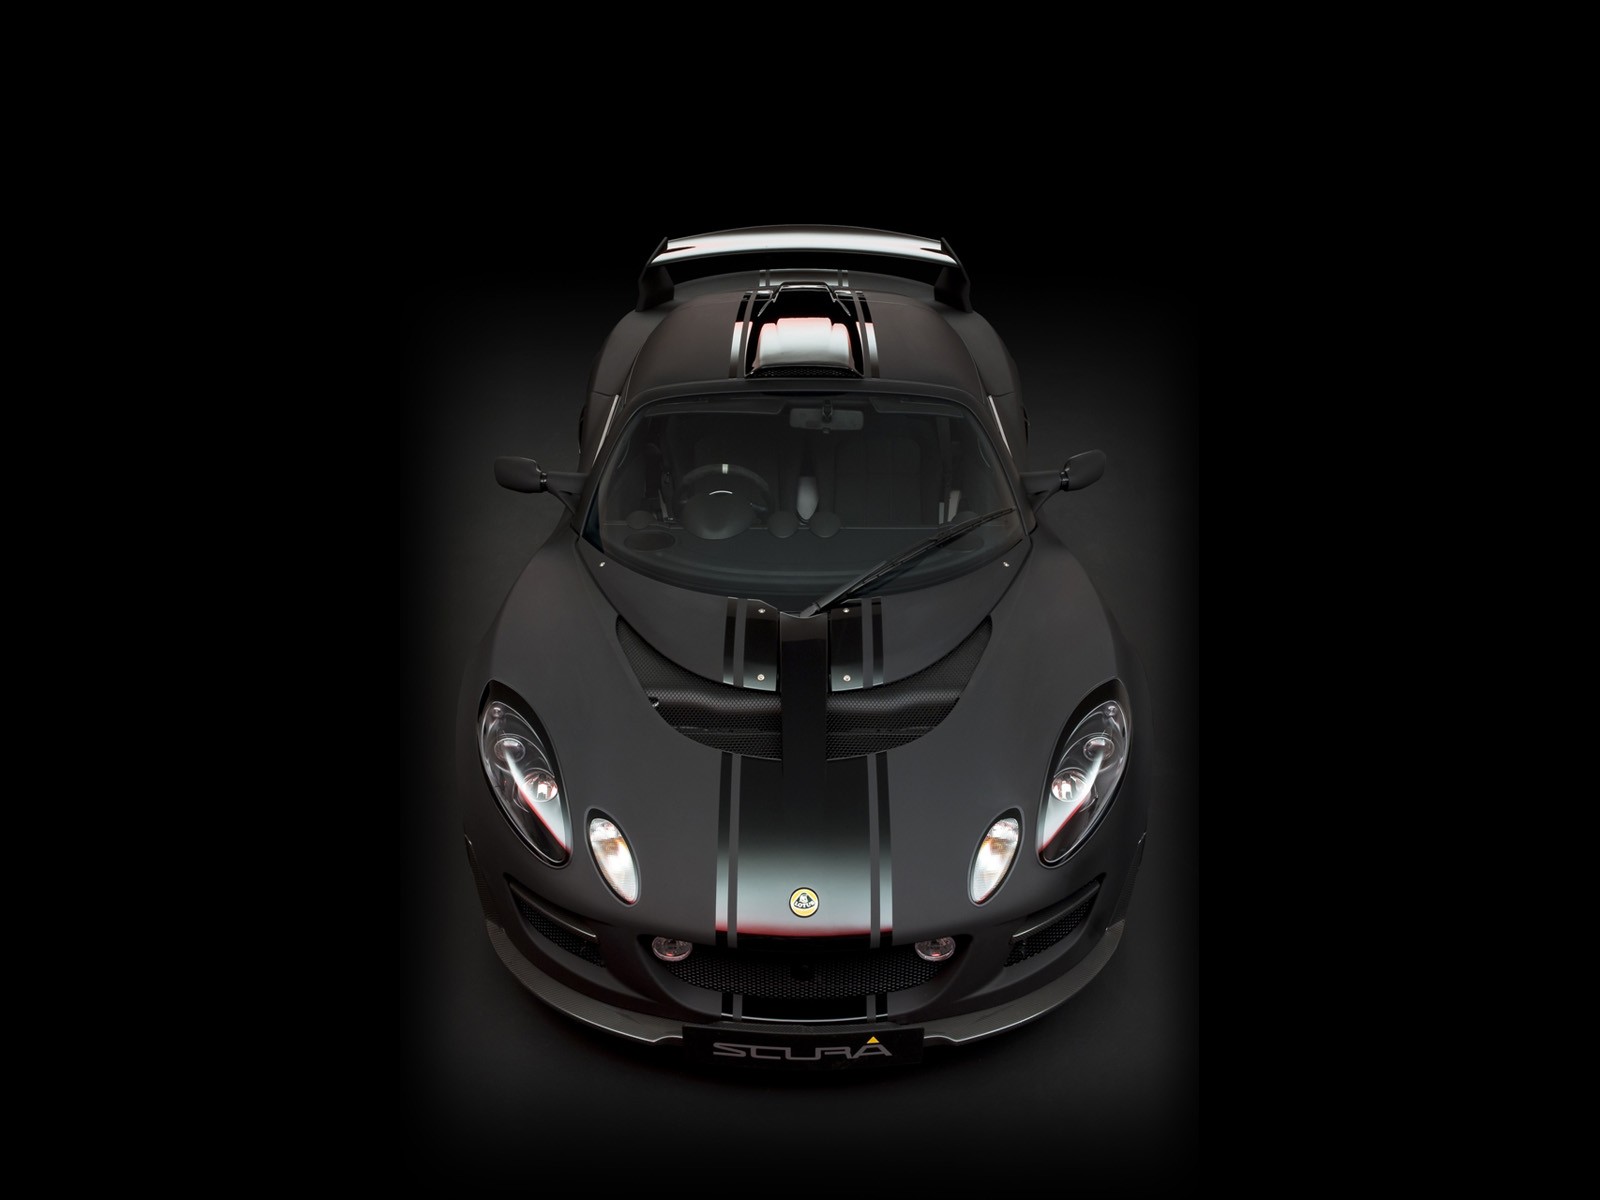 2010 Lotus-Sportwagen in limitierter Auflage Tapete #6 - 1600x1200